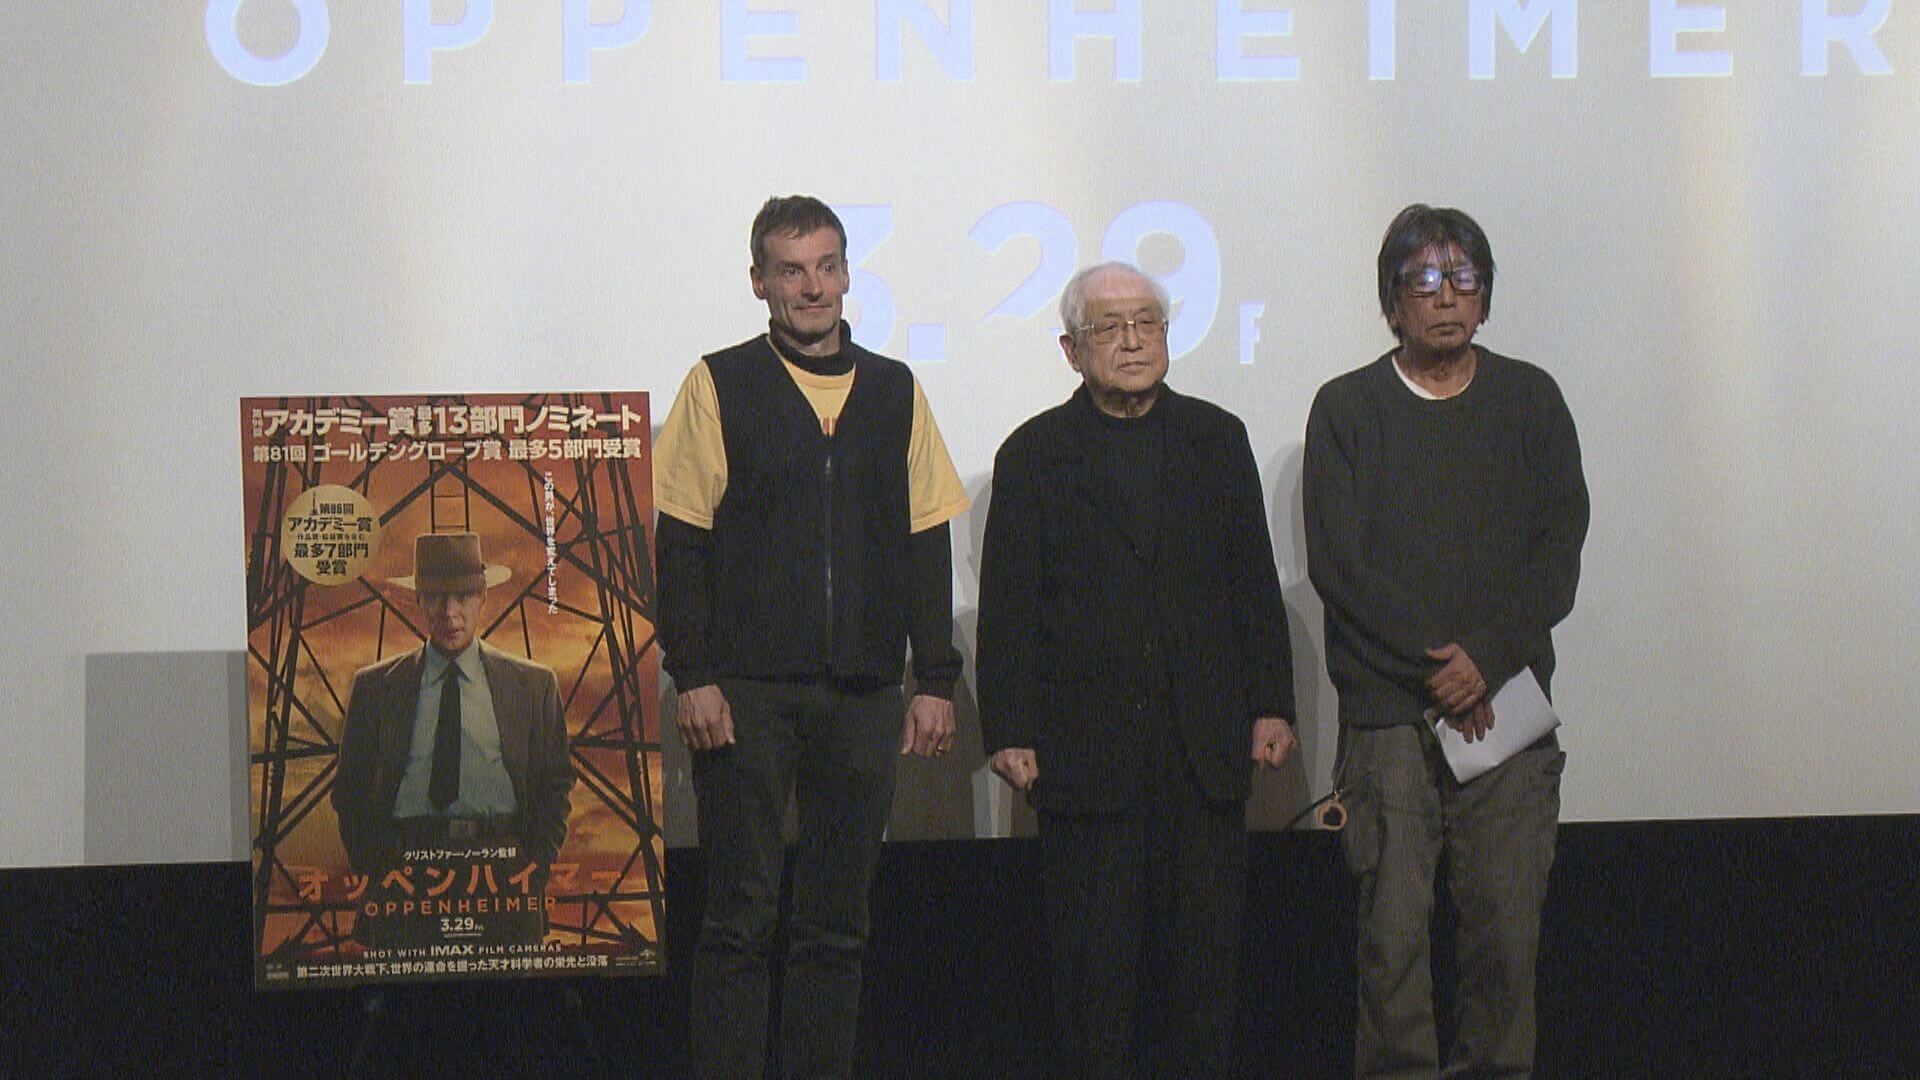 映画オッペンハイマー 被爆地広島で全国初の試写会 広島